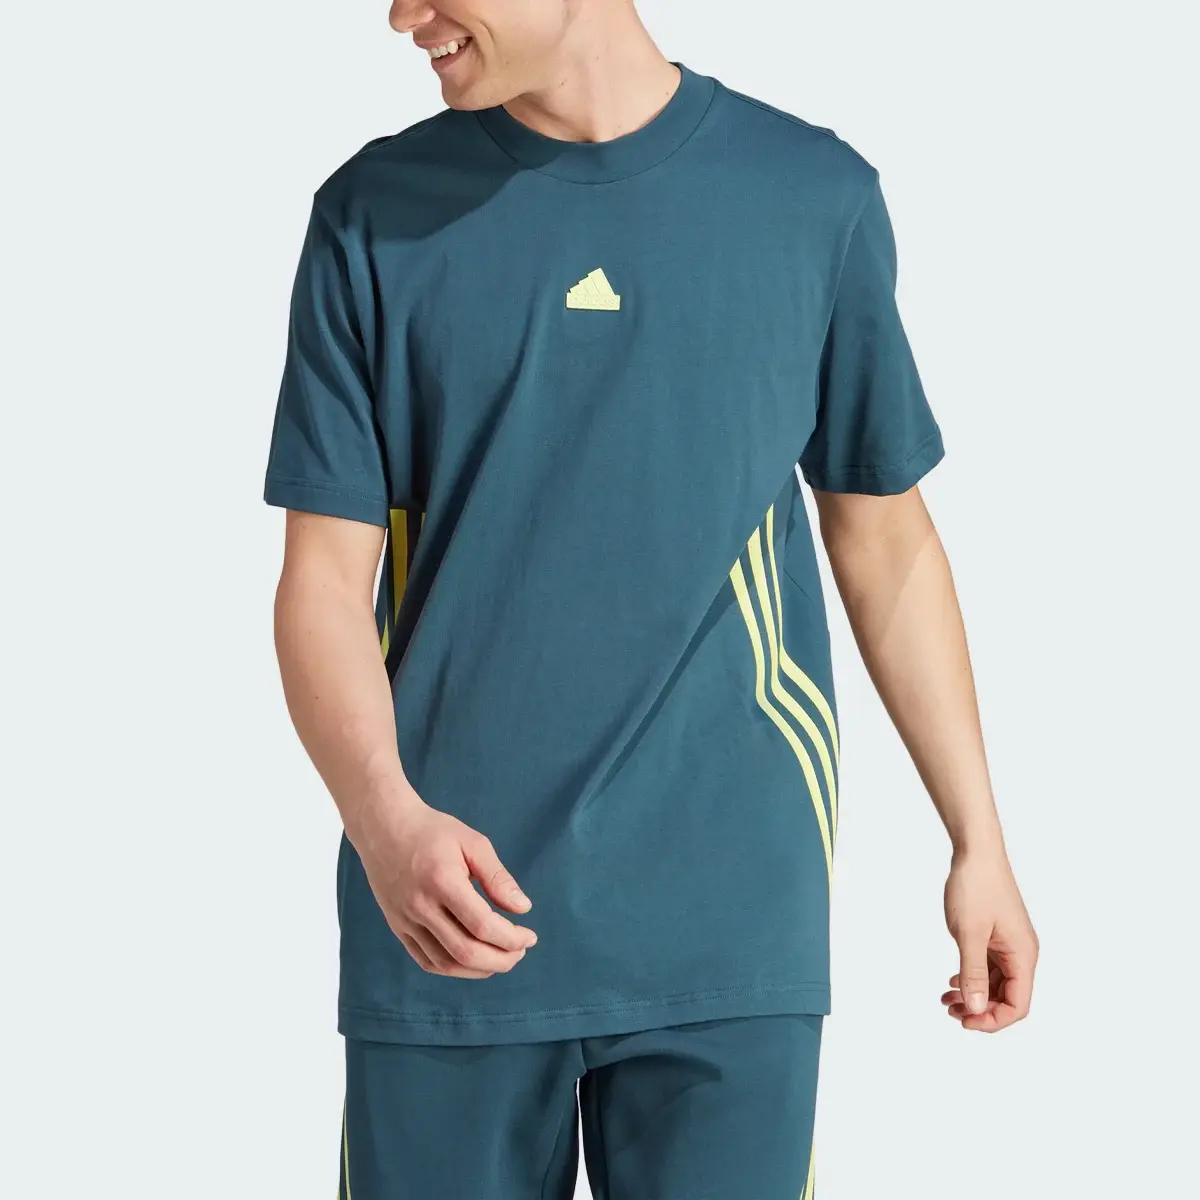 Adidas T-shirt Future Icons 3-Stripes. 1